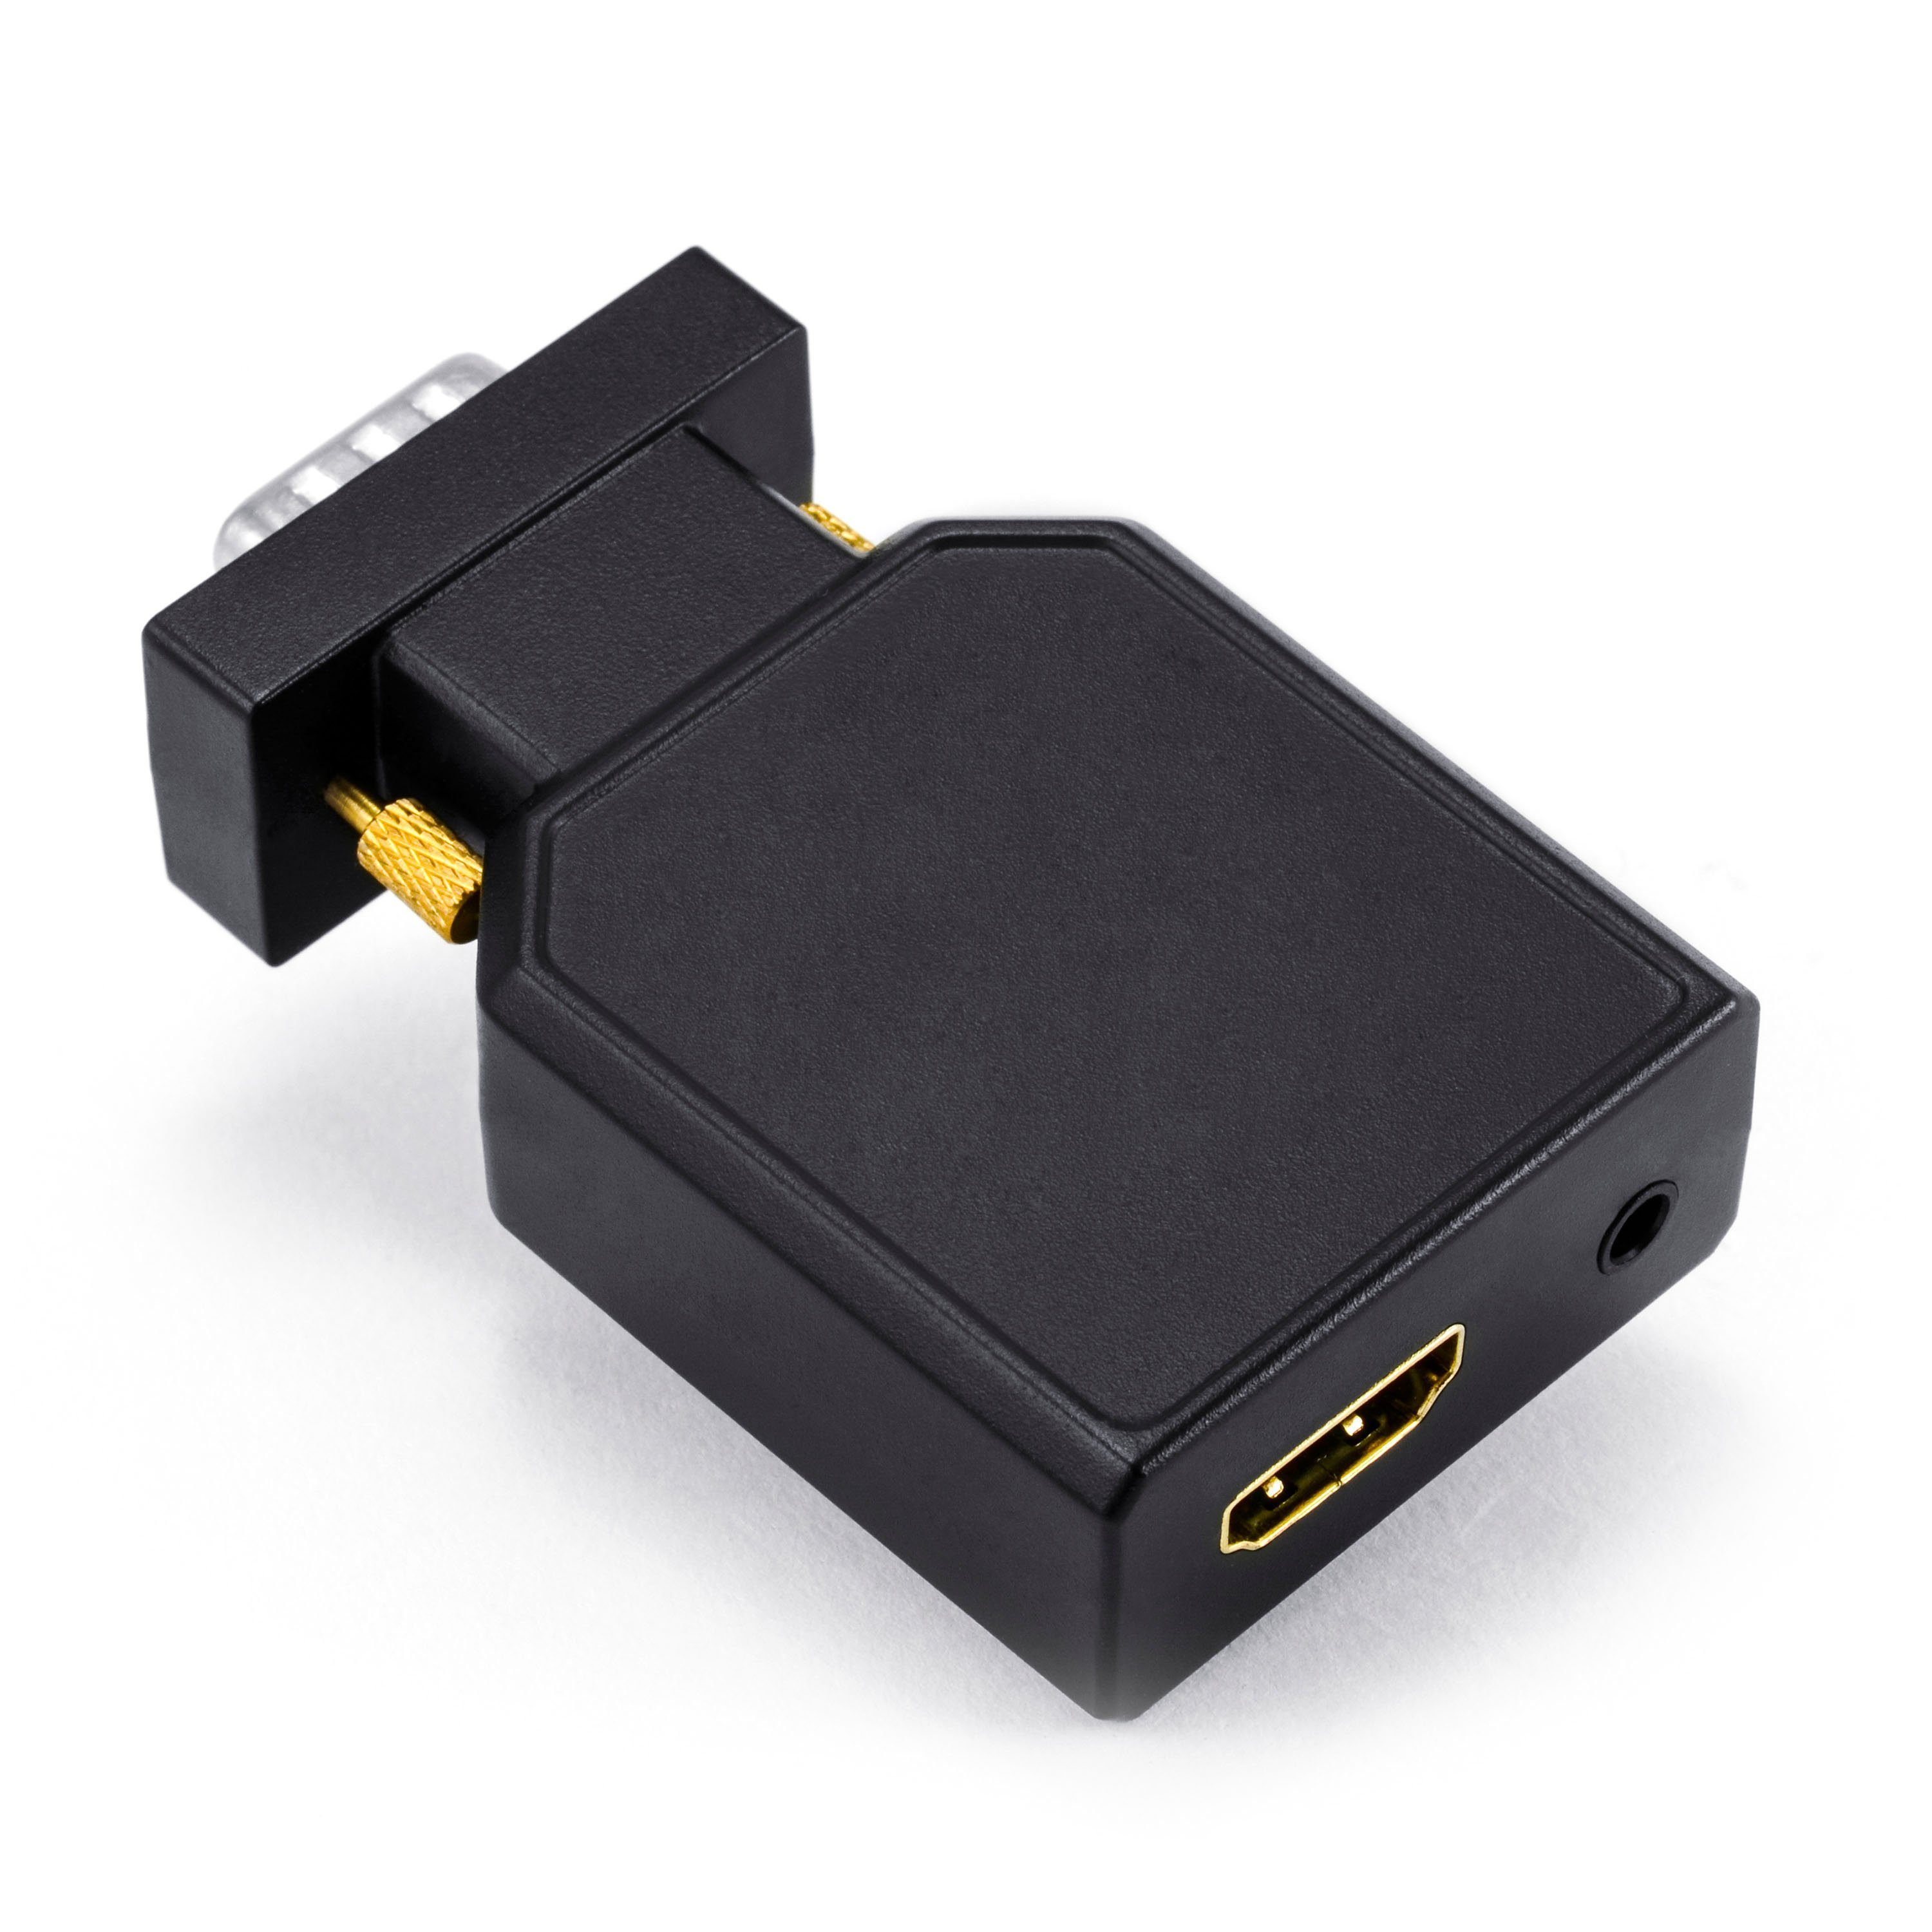 CSL Video-Adapter zu VGA Stecker + 3,5mm Klinken Buchse; HDMI Buchse, 1080p  VGA zu HDMI Video-/Audio Konverter online kaufen | OTTO